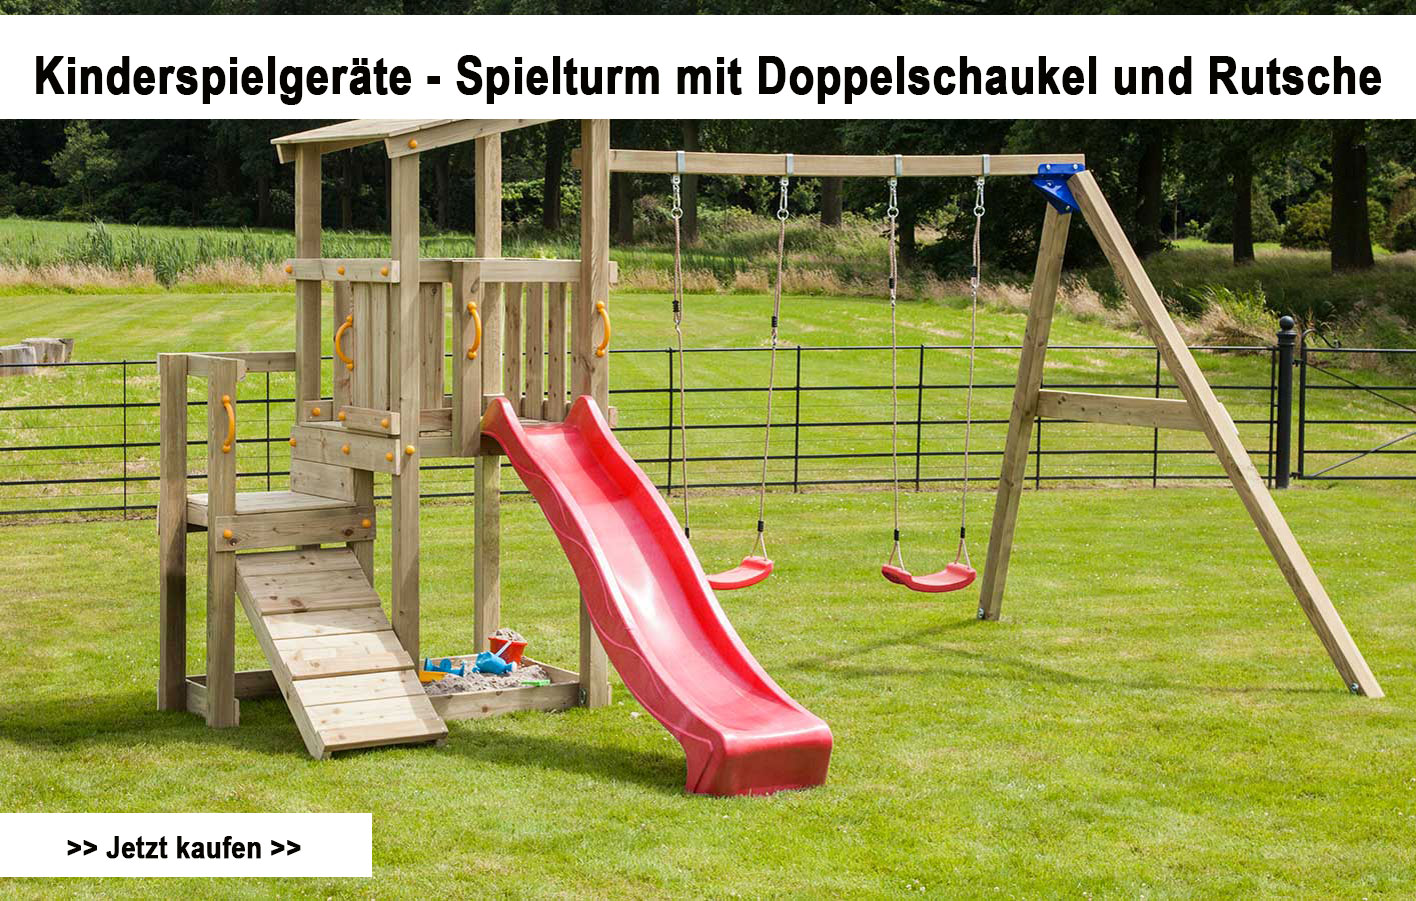 schrameyer-shop.de - Kinderspielturm mit Rutsche und Schaukel online bestellen und bequem liefern lassen!